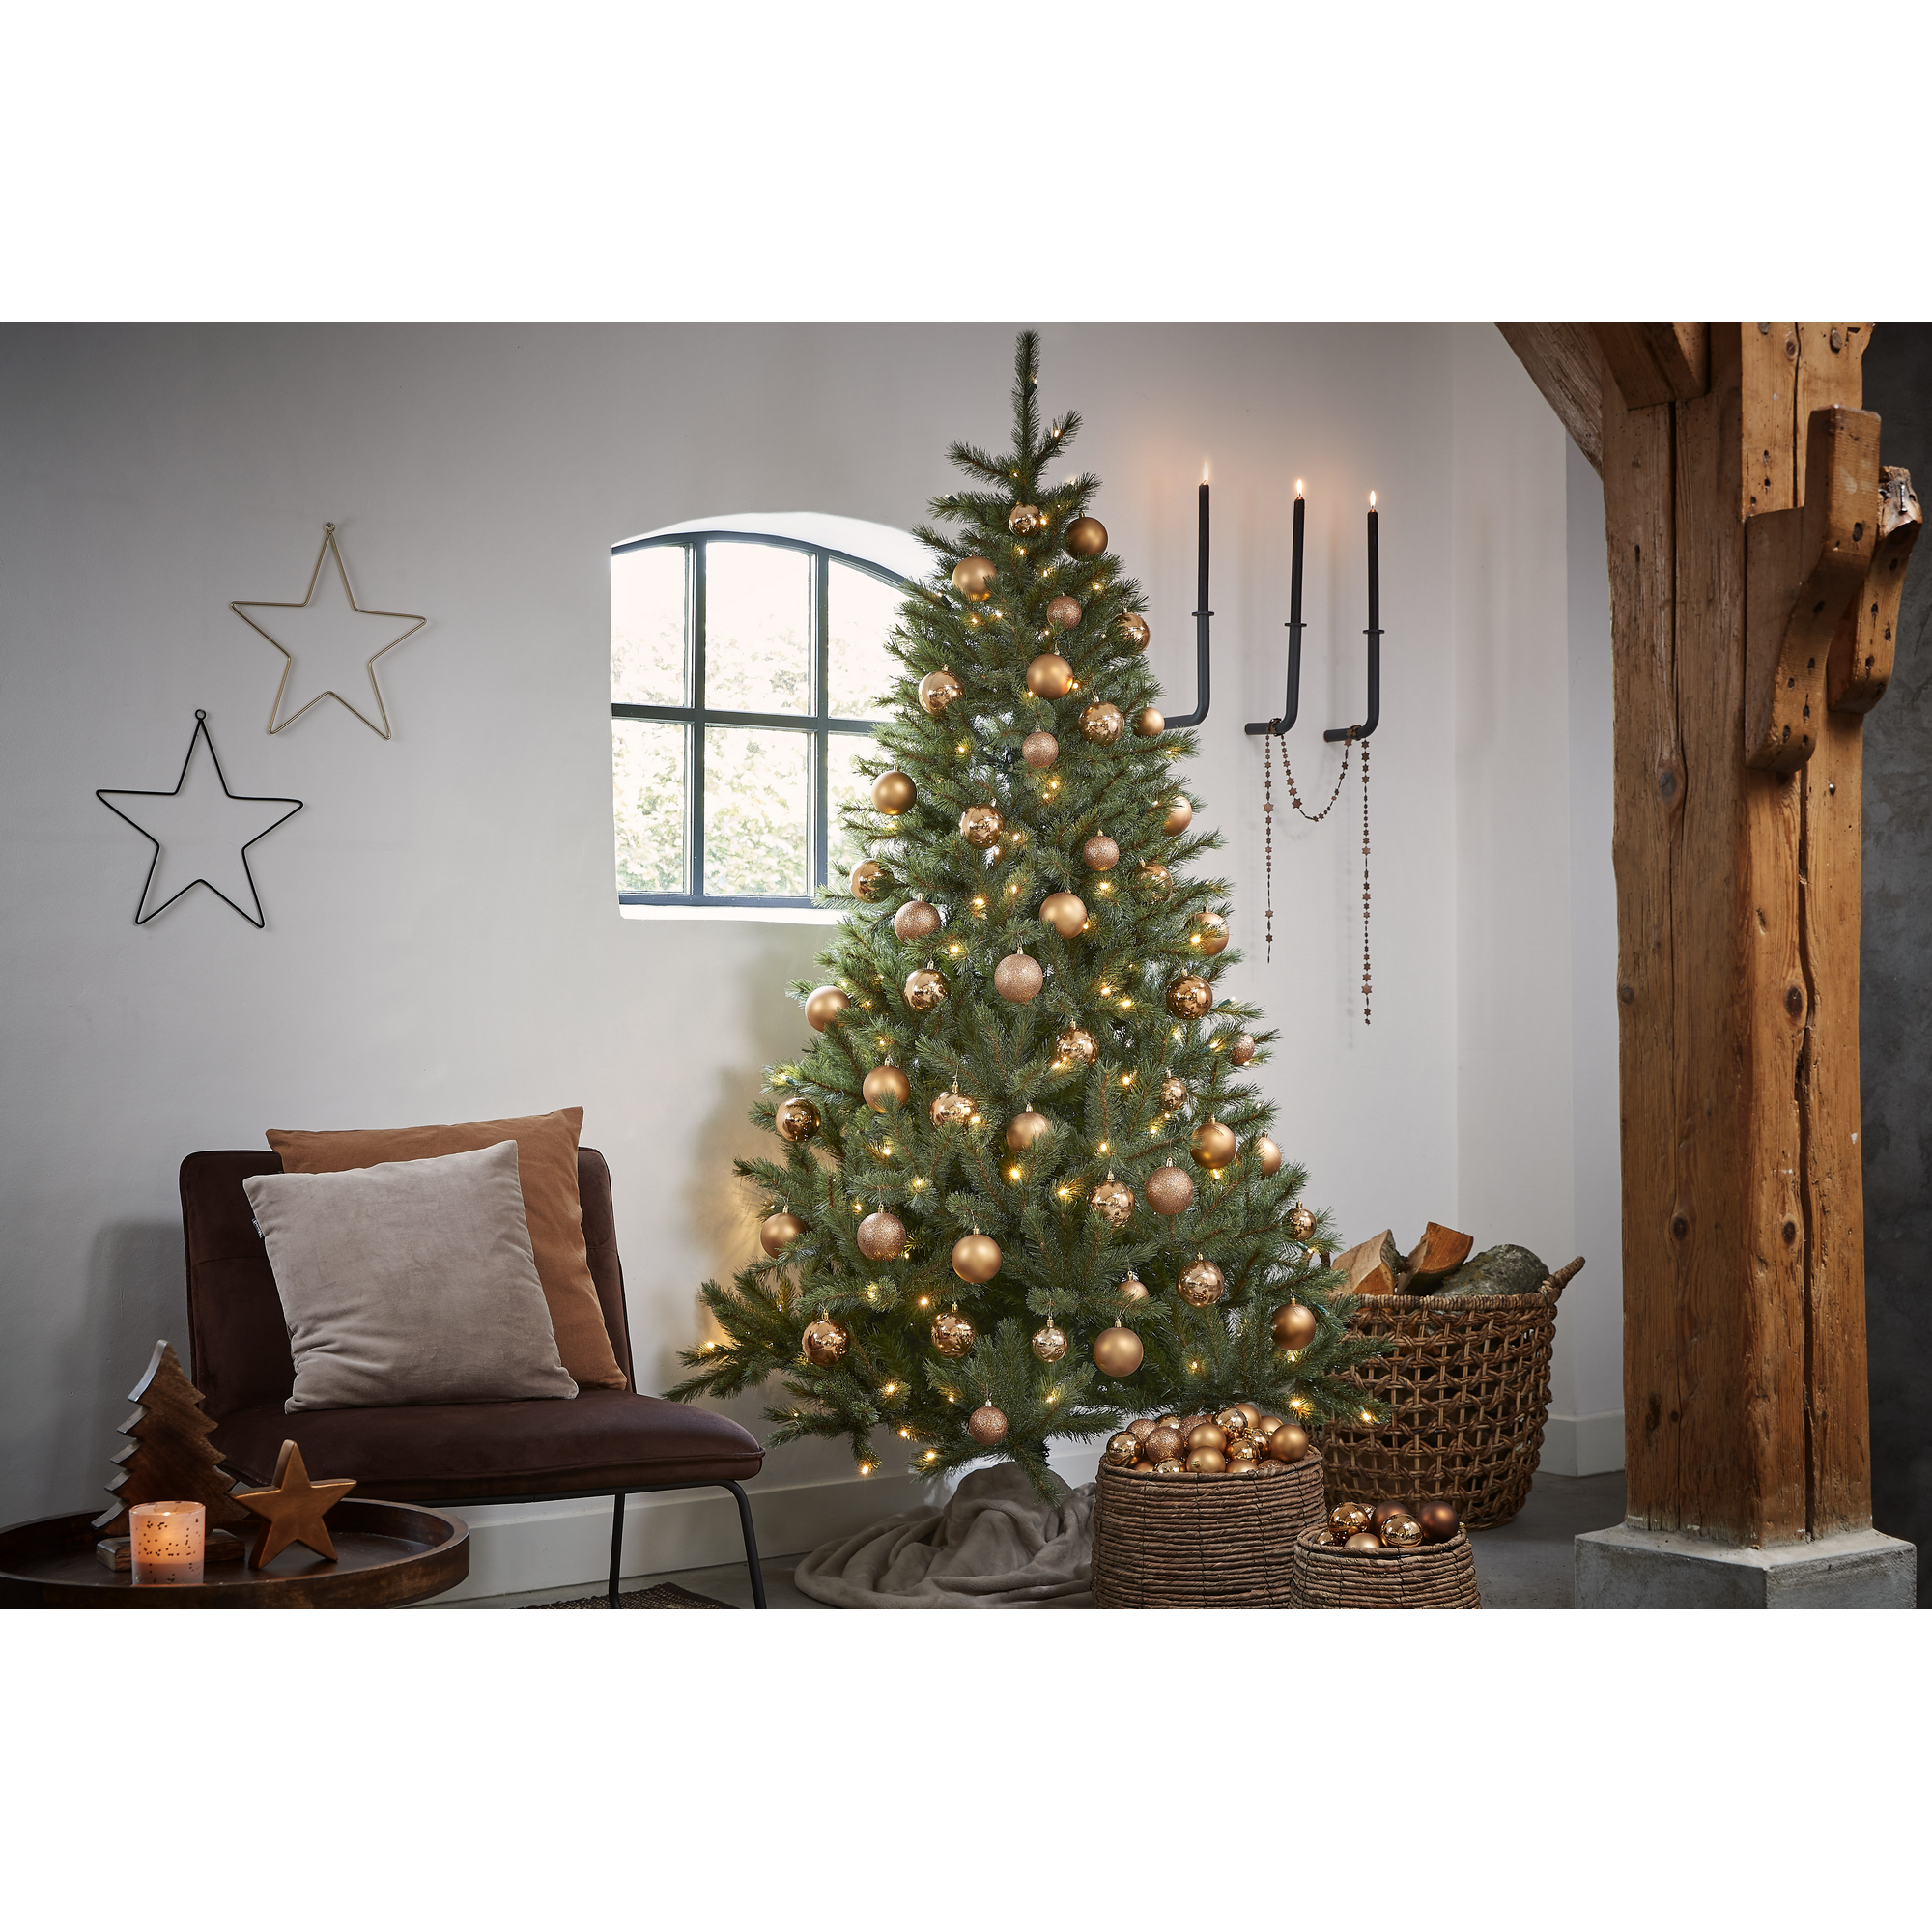 Künstlicher Weihnachtsbaum 'Vail' grün 155 cm, mit LED-Beleuchtung + product picture